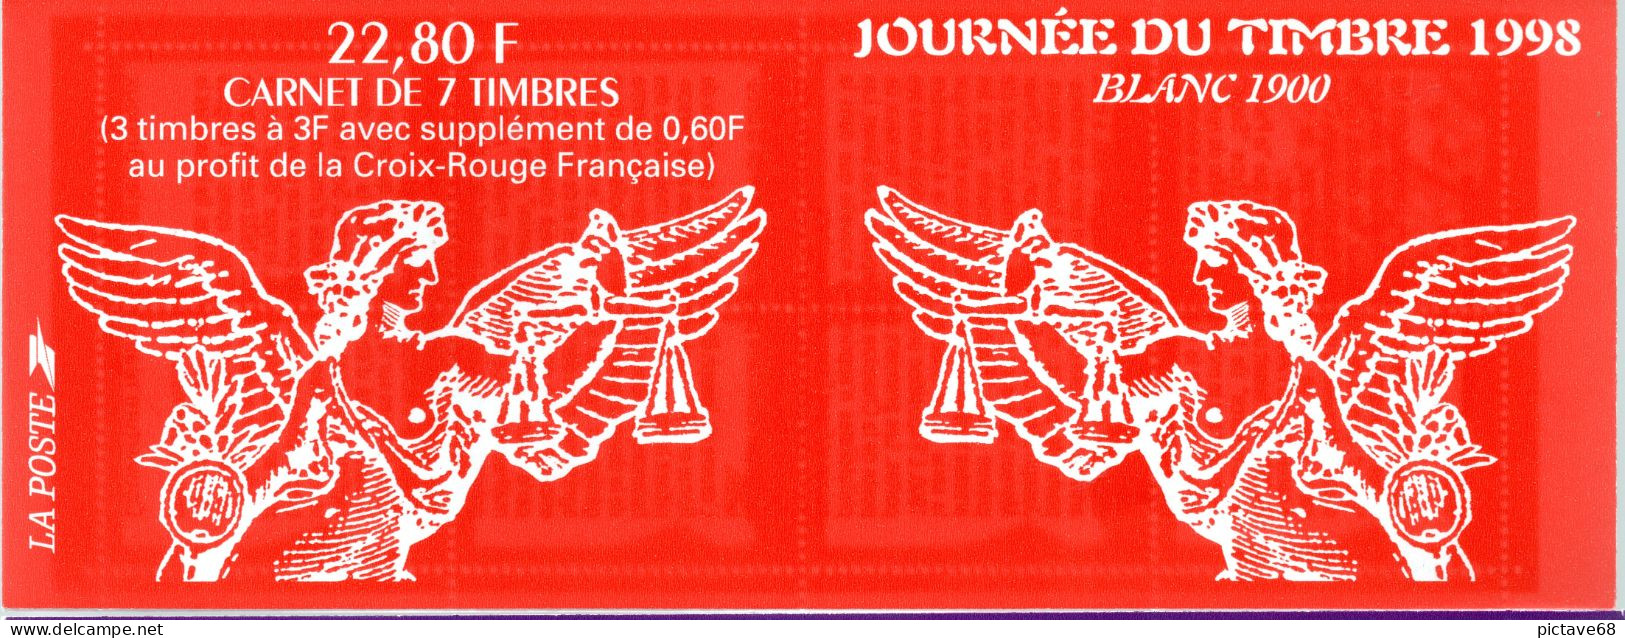 FRANCE / CARNET  JOURNEE DU TIMBRE N° BC 3117 ( 1998) - Journée Du Timbre